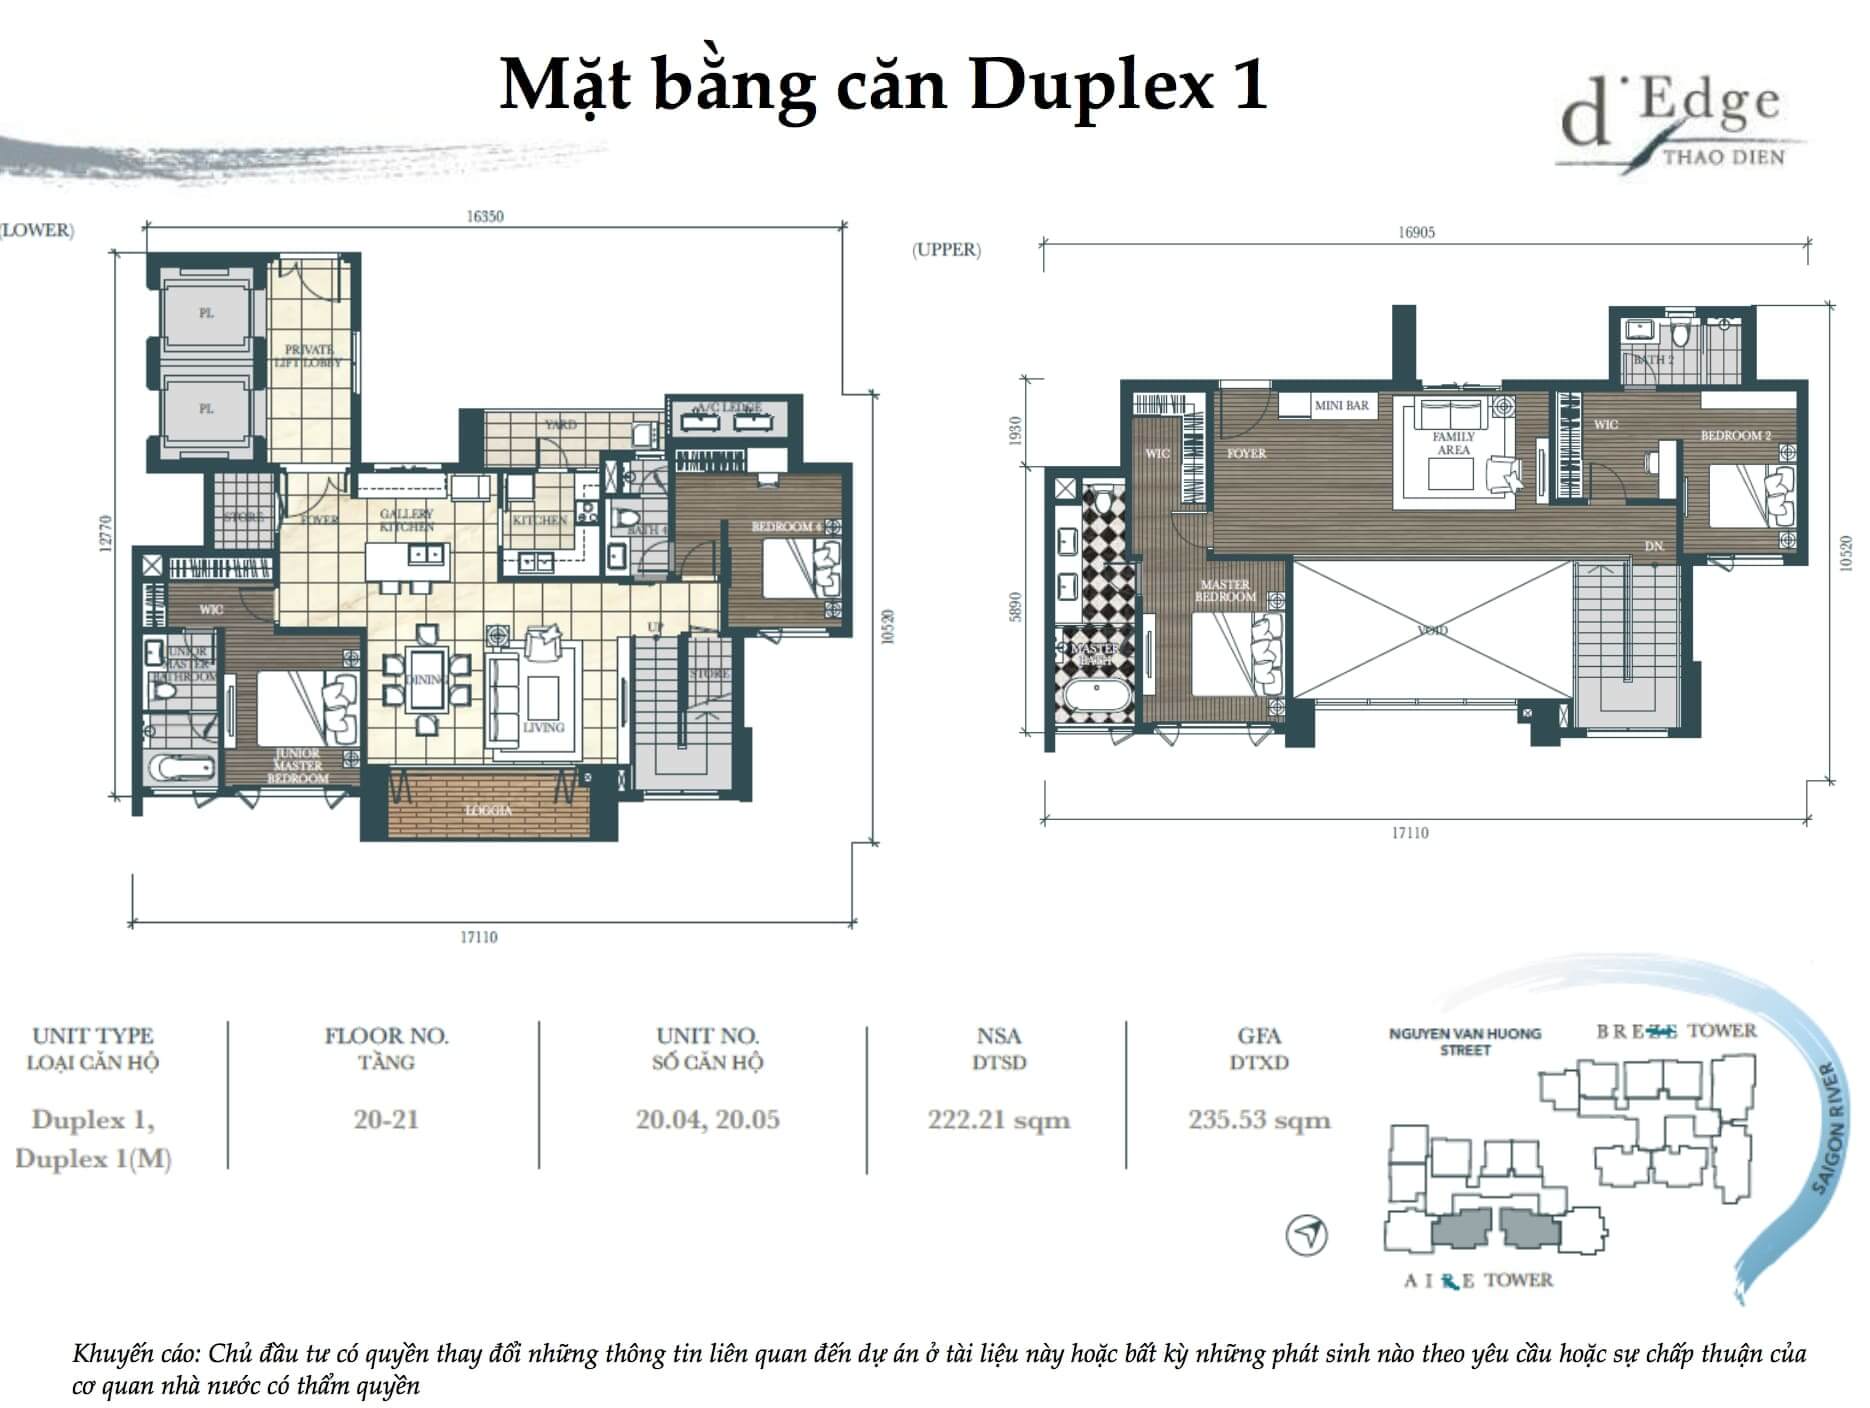 Mặt bằng căn hộ Duplex d'Edge Thao Dien quận 2